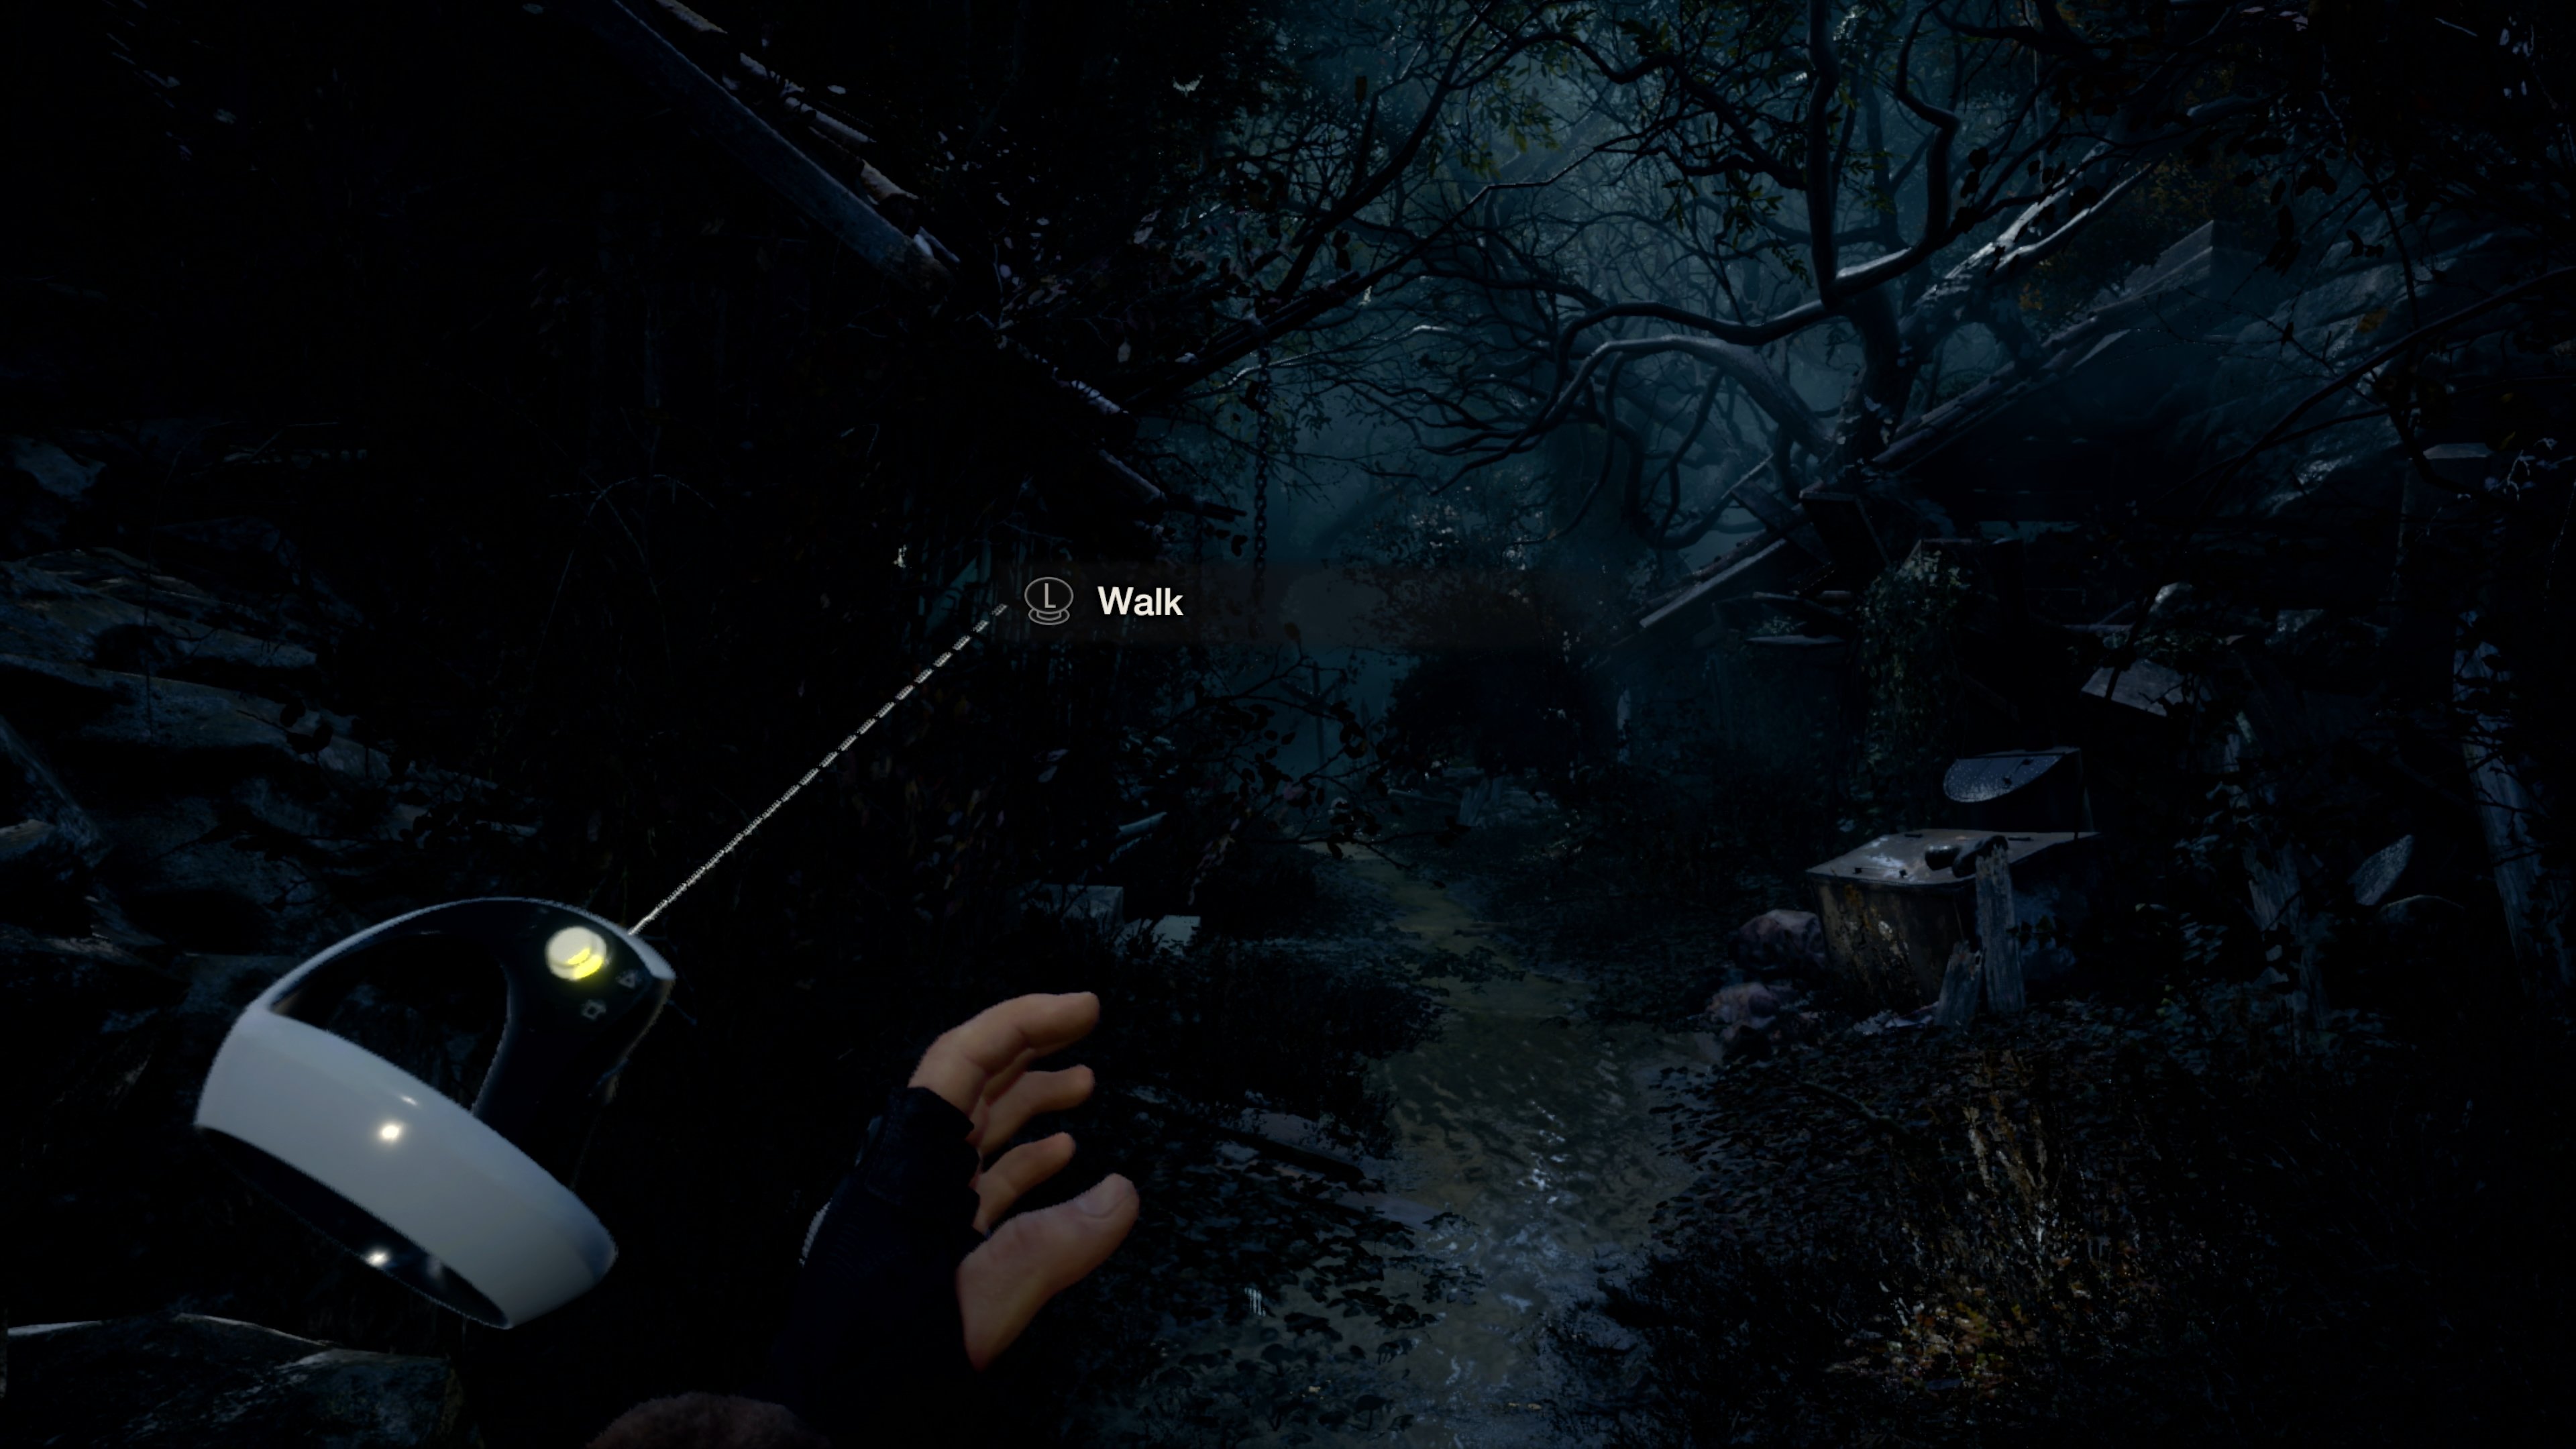 Resident Evil 4: VR Mode DLC available in December 